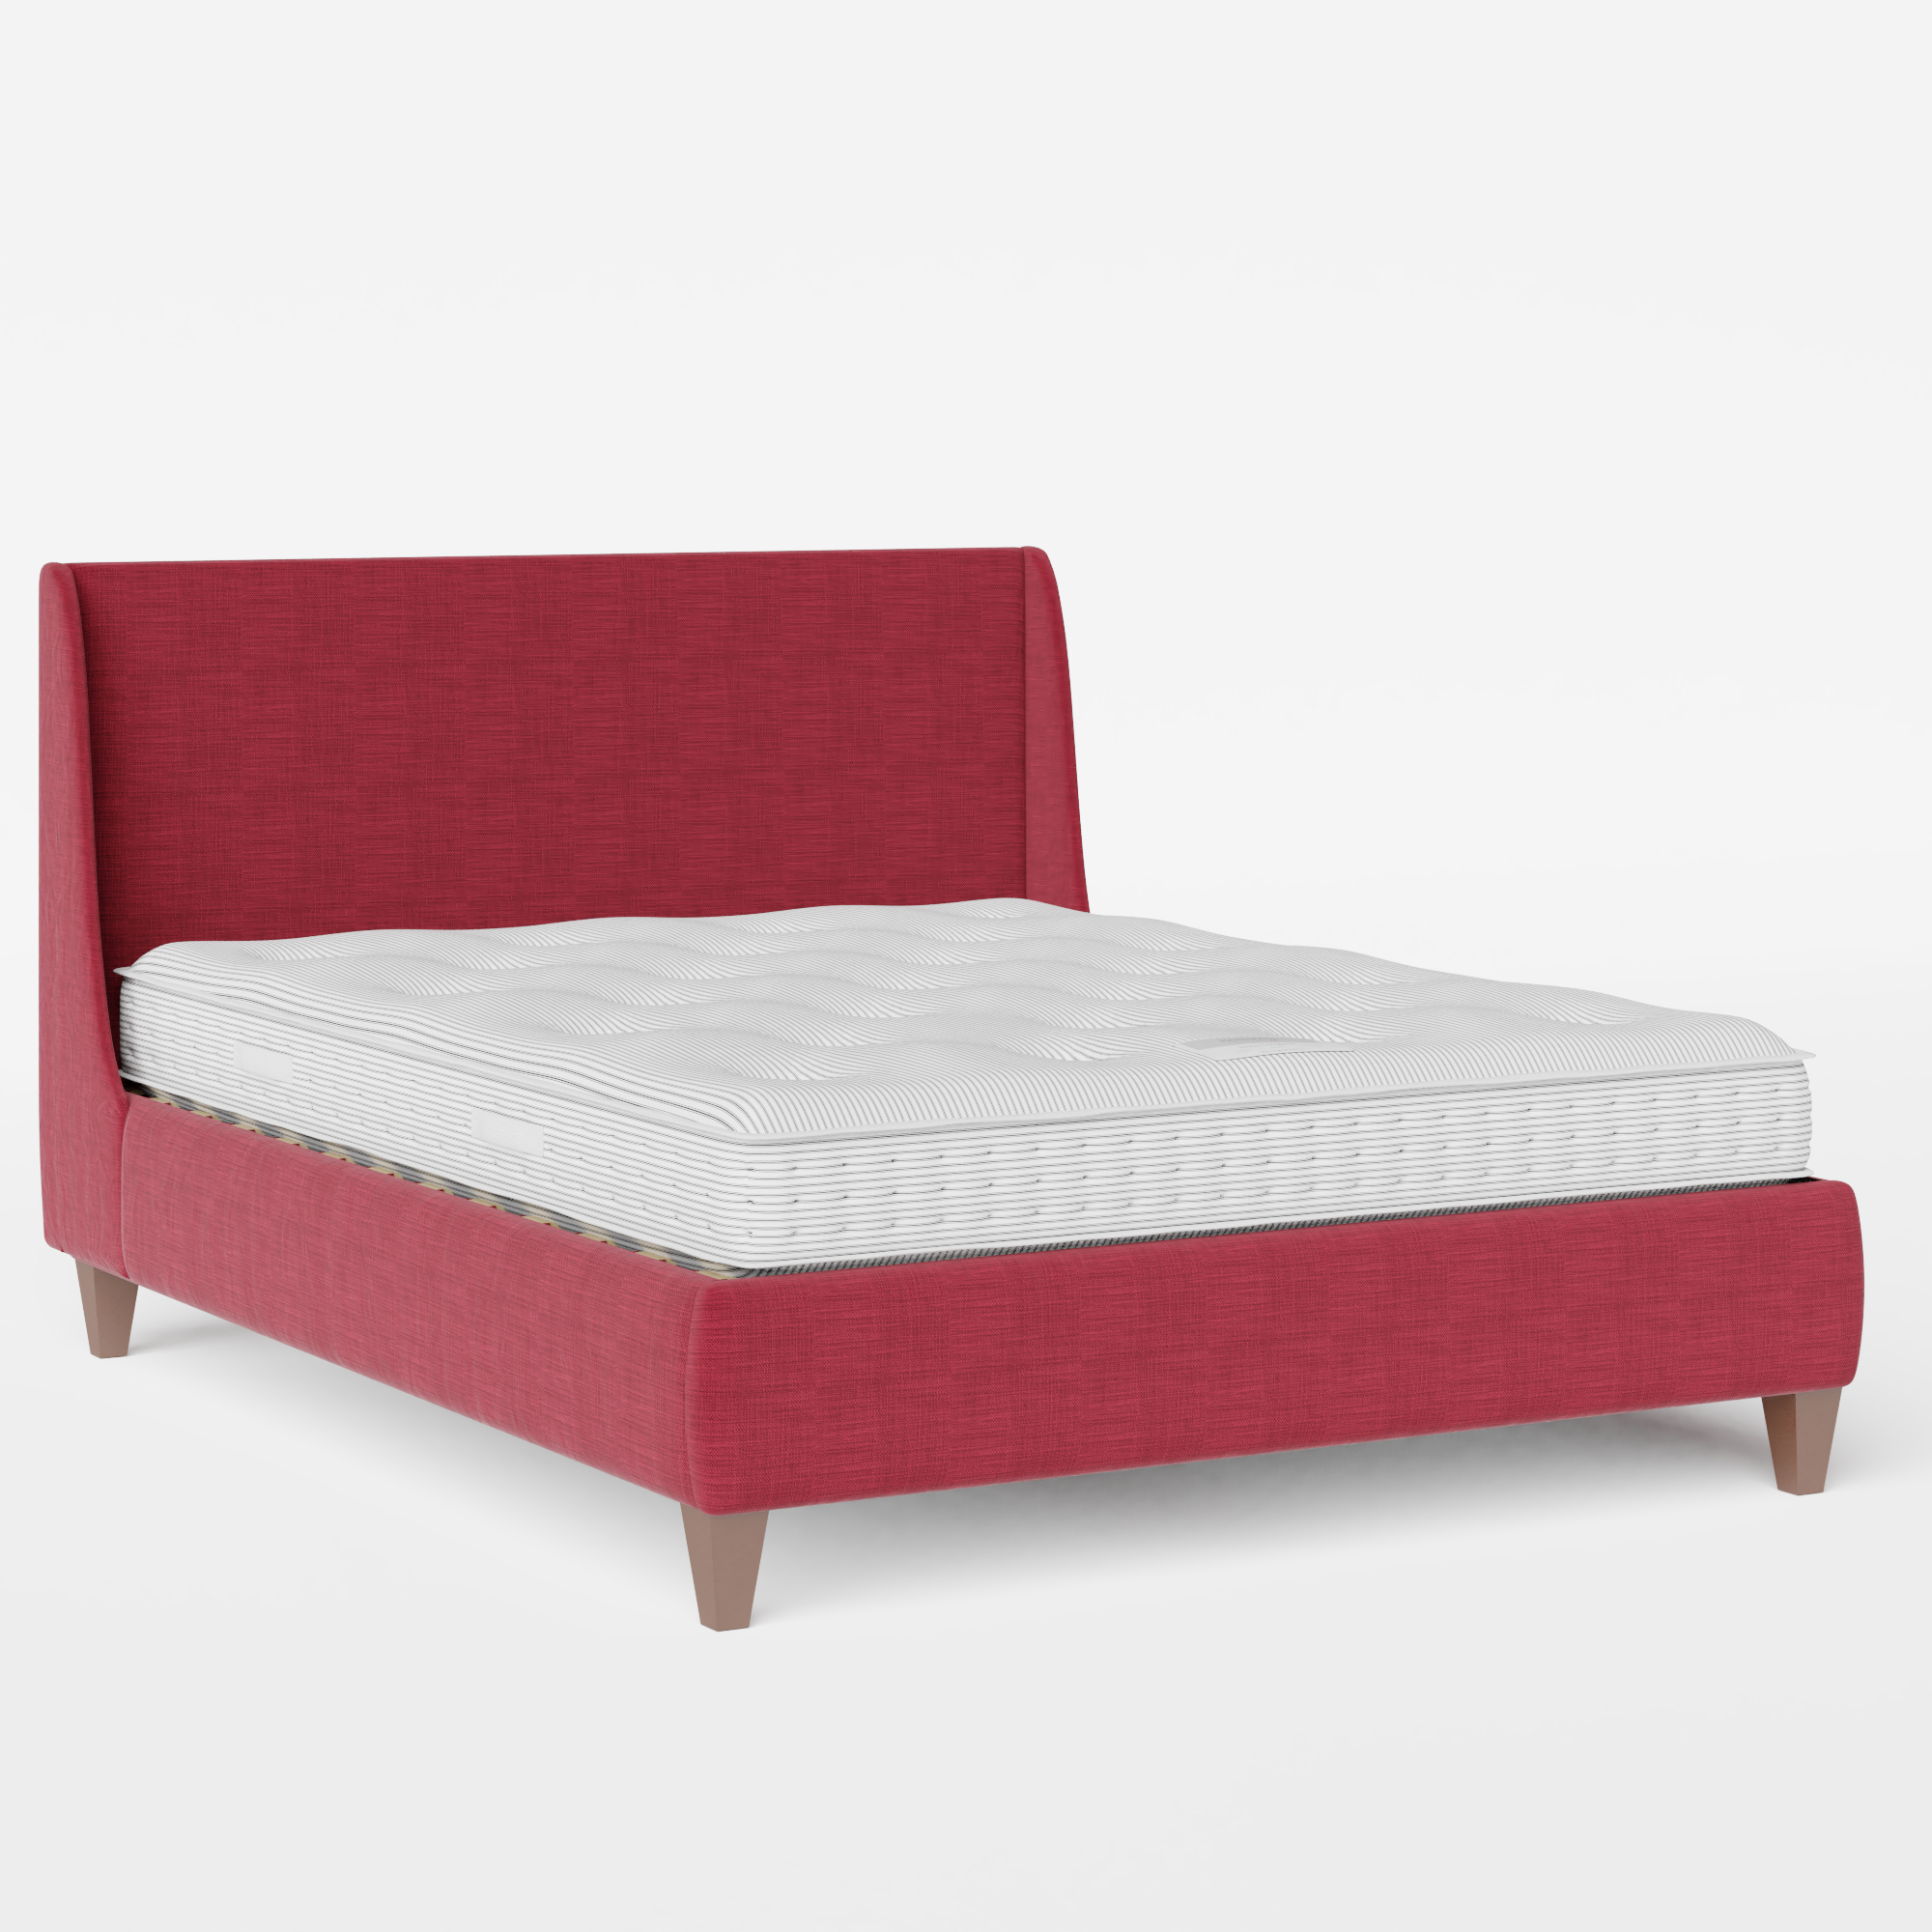 Sunderland cama tapizada en tela cherry